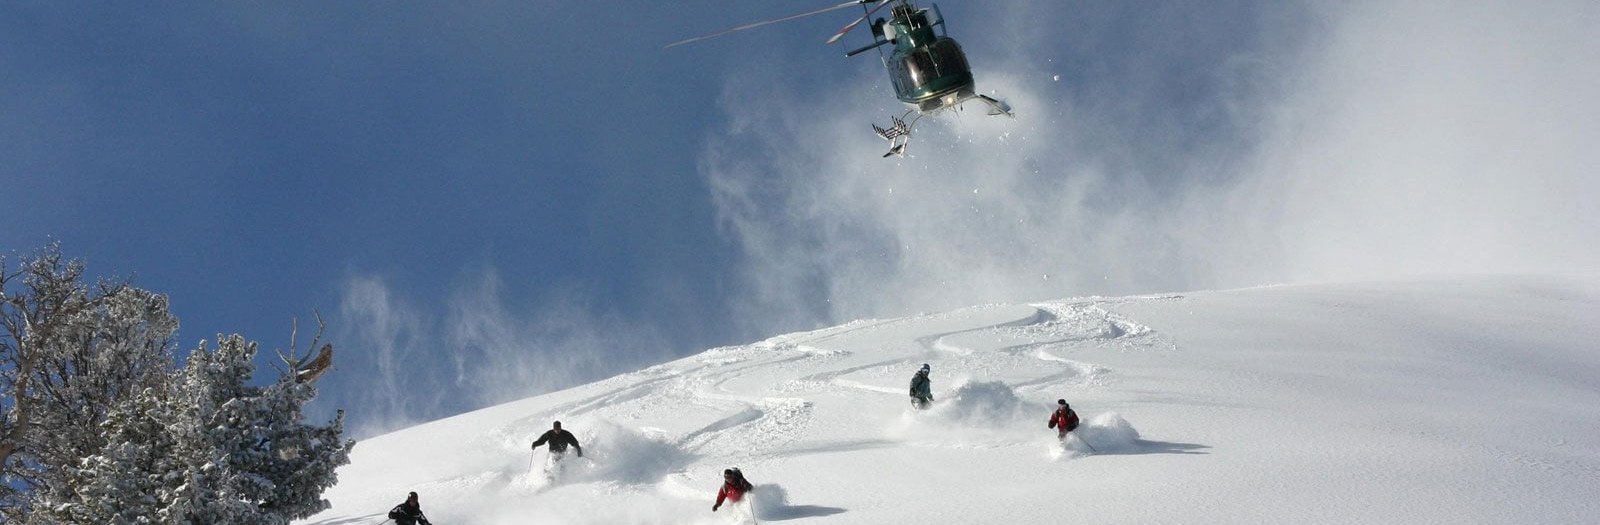 jackson hole heli skiing, high mountain heli skiing